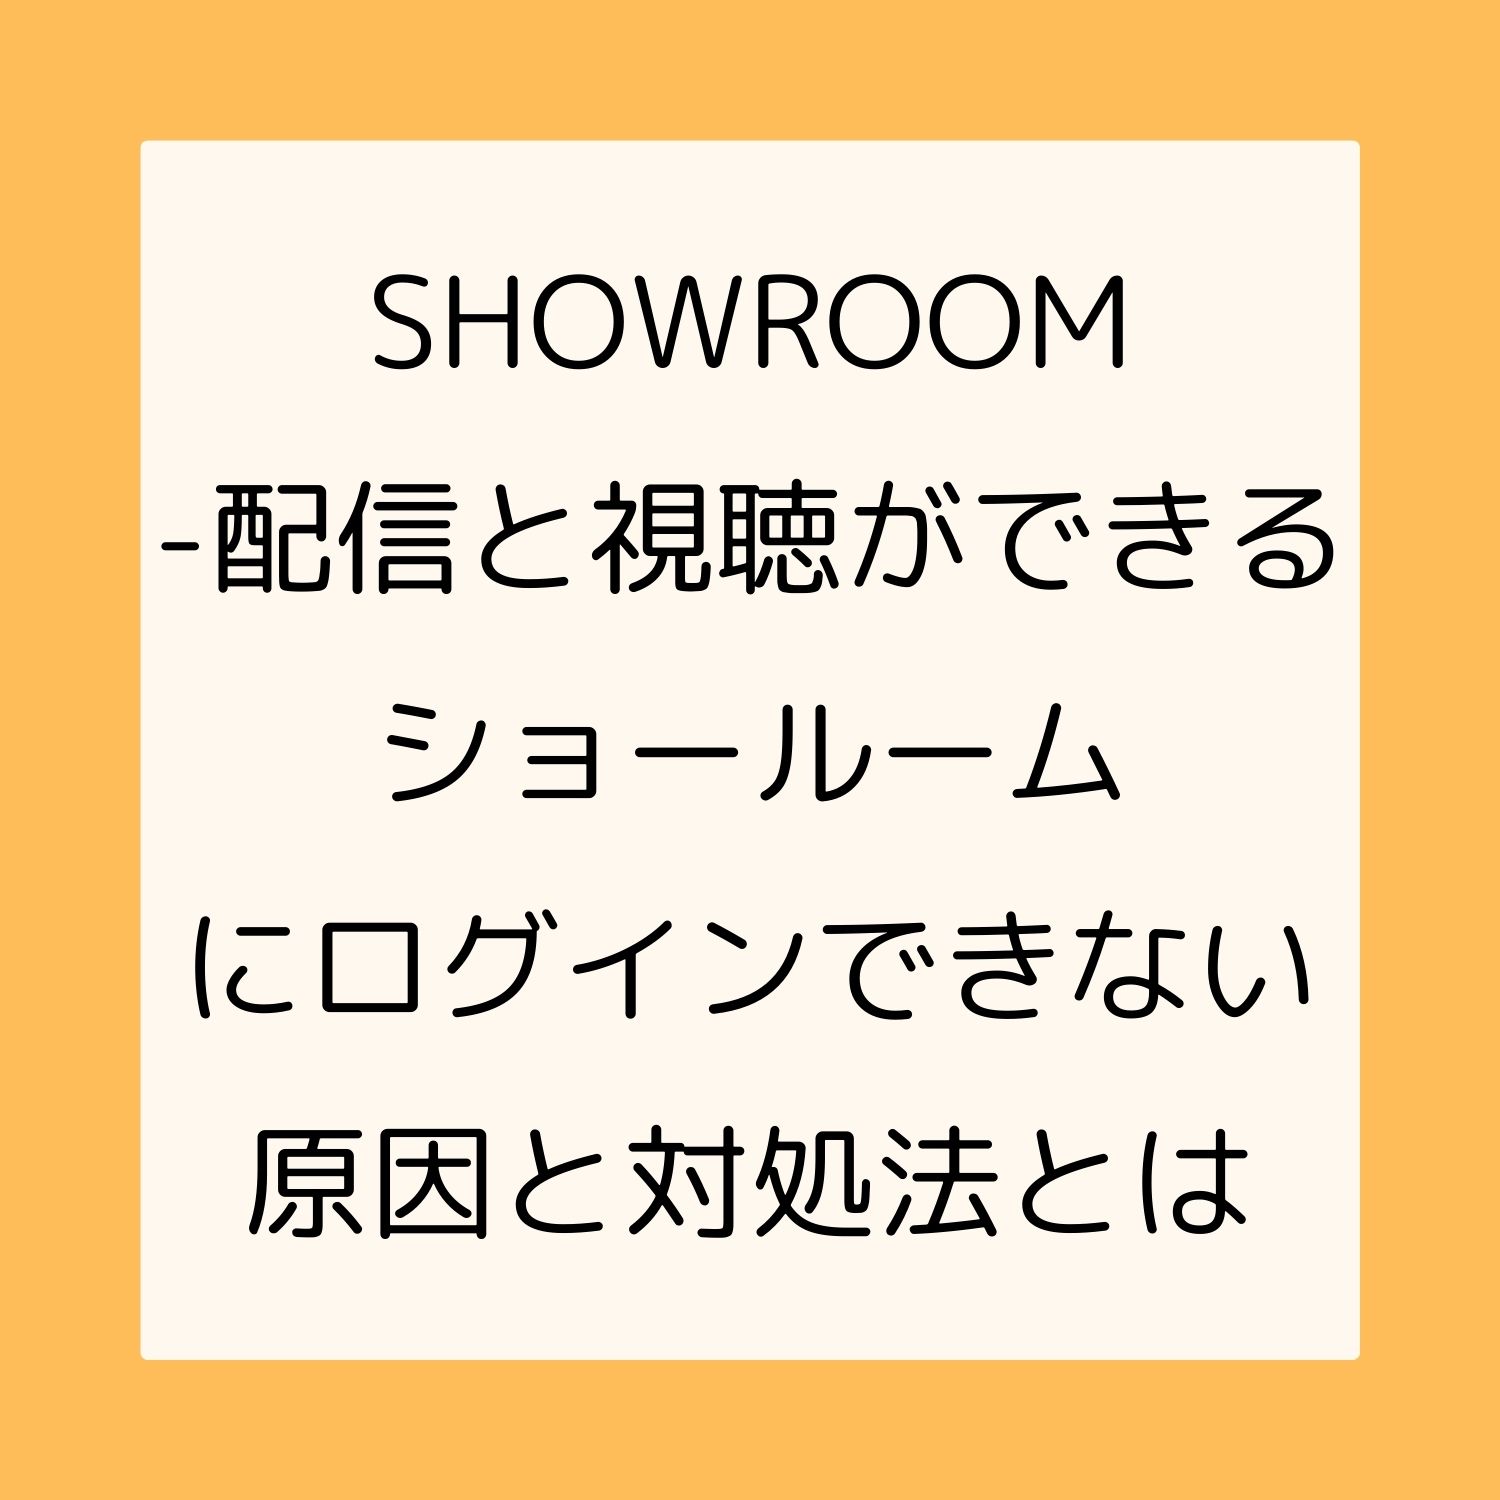 SHOWROOM - 配信と視聴ができるショールームにログインできない原因と対処法とは #SHOWROOM - 配信と視聴ができるショールーム